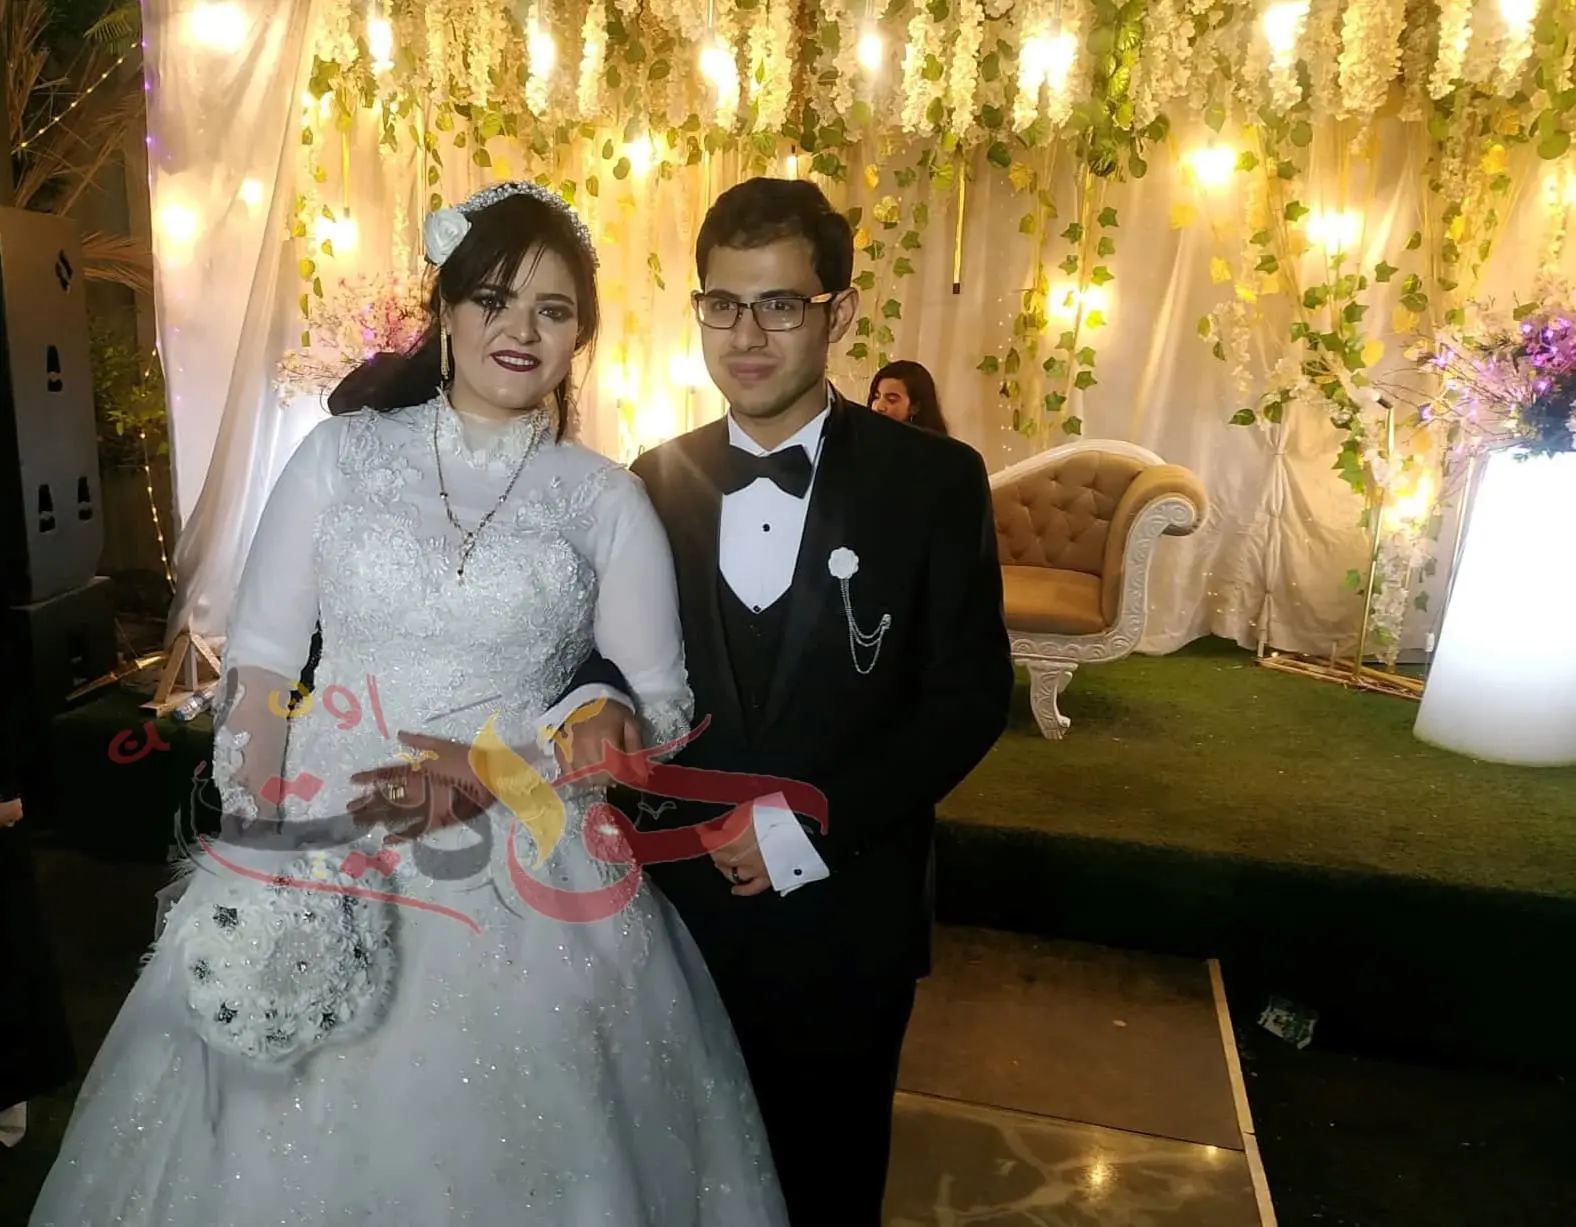 ألف مبروك الزفاف السعيد .. الدكتور أحمد اللهوانى على الدكتورة رضوى غنيم